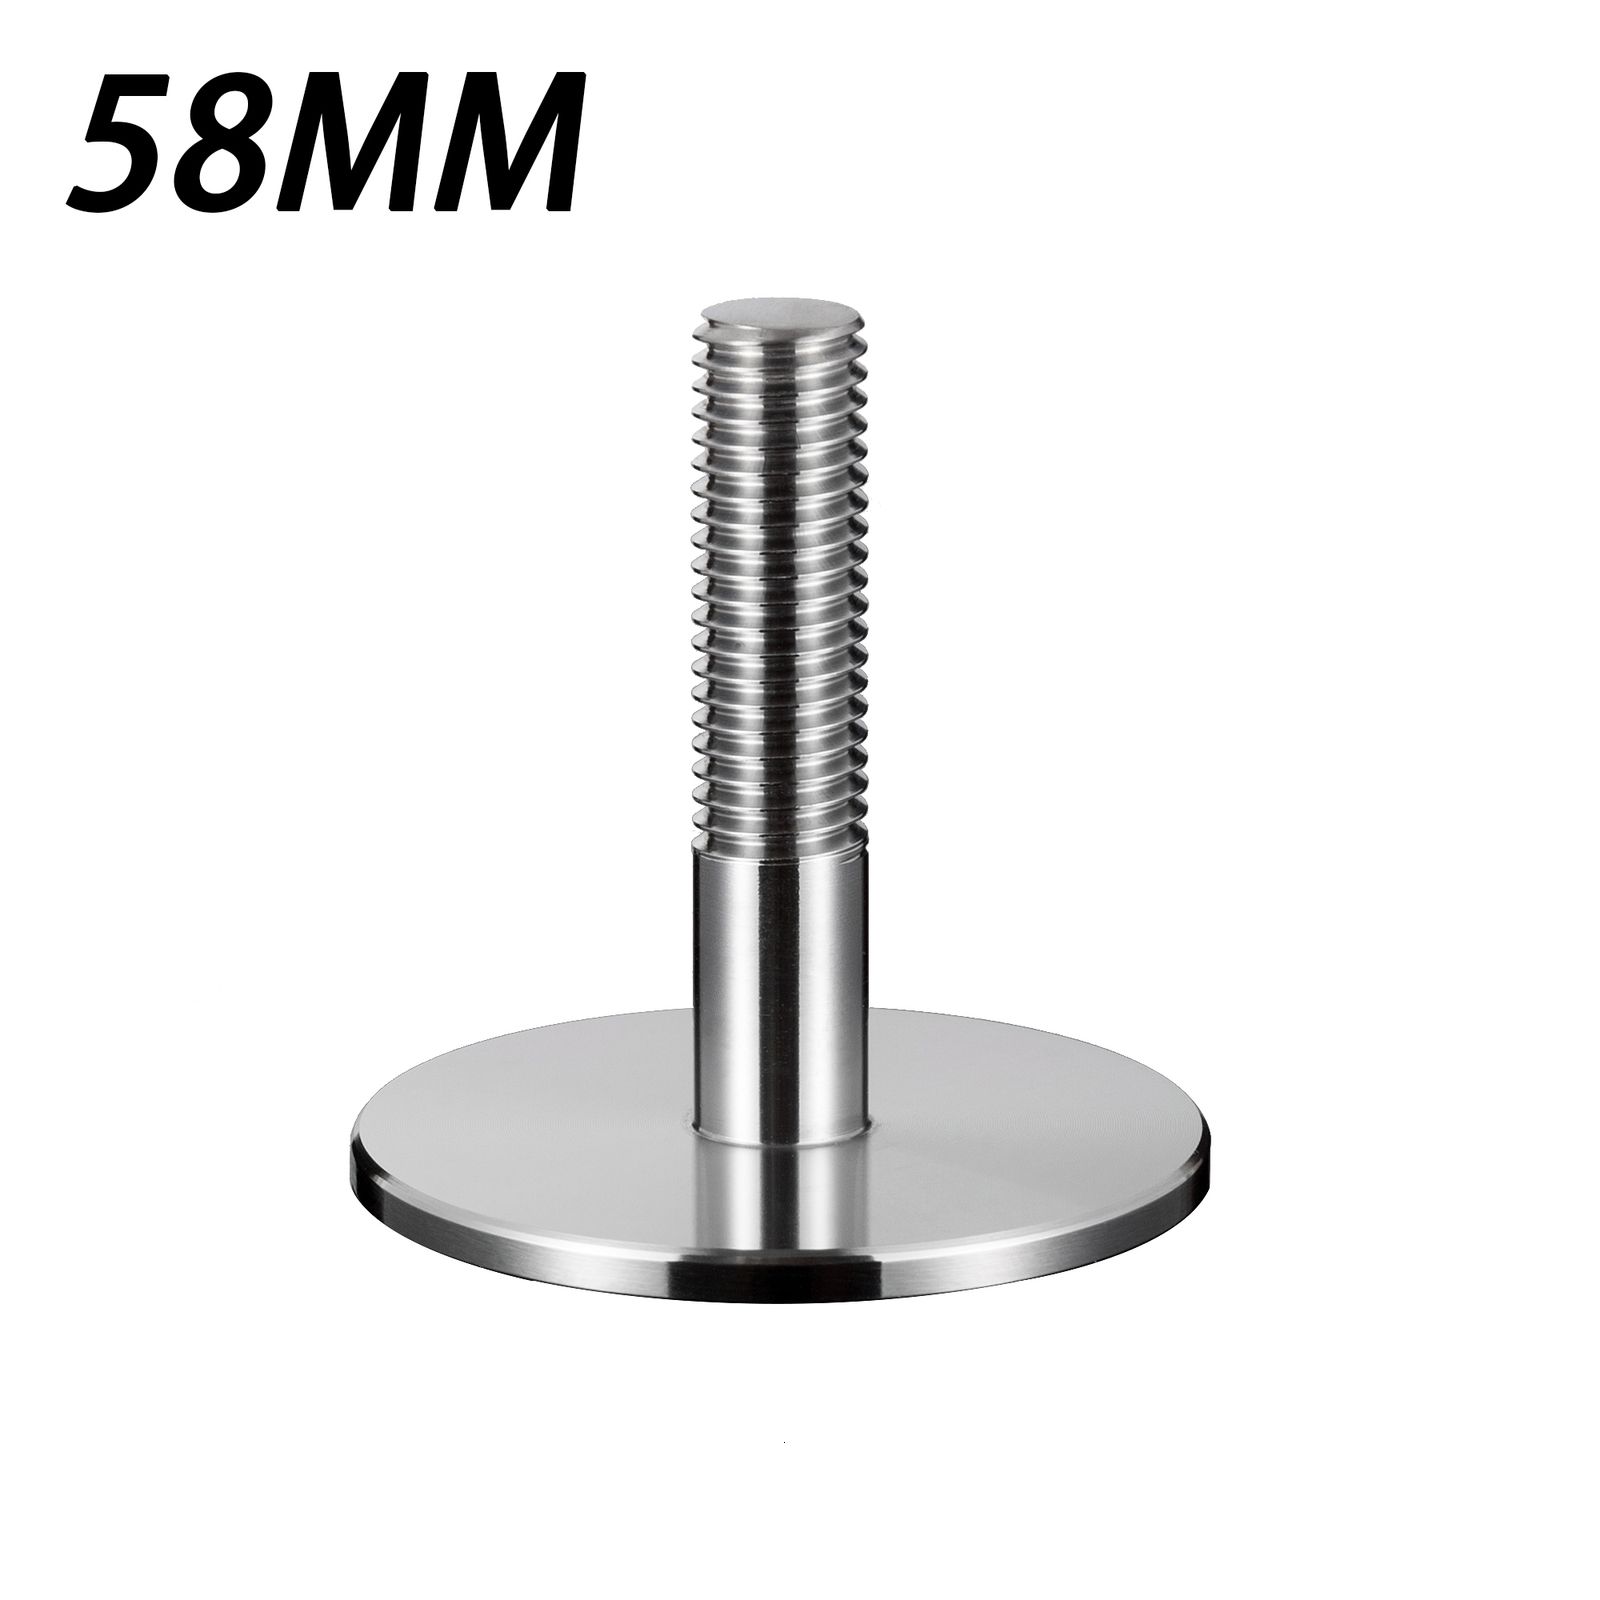 58 mm-thread-base